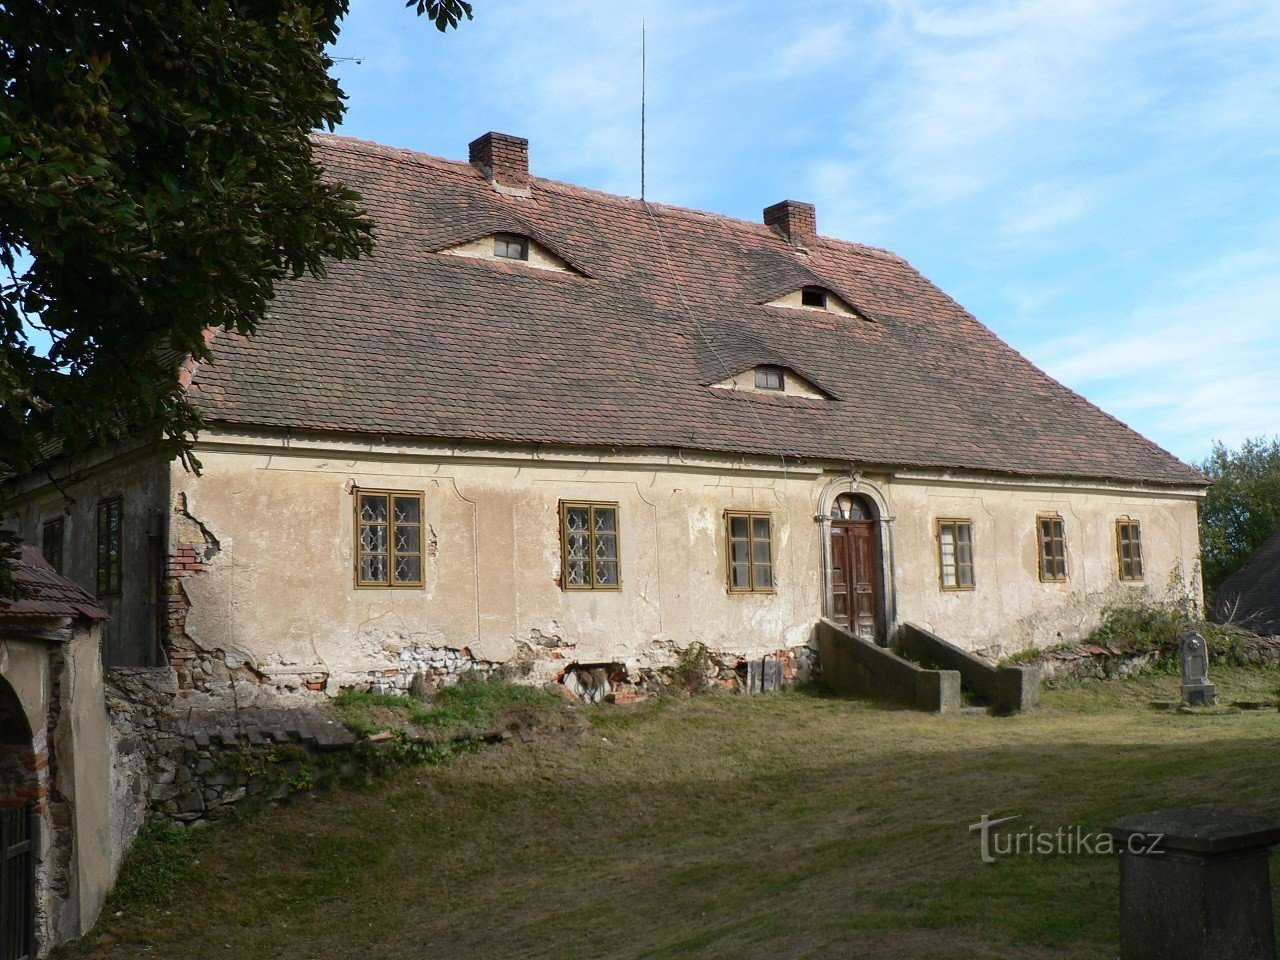 Деревня, дом священника в стиле барокко